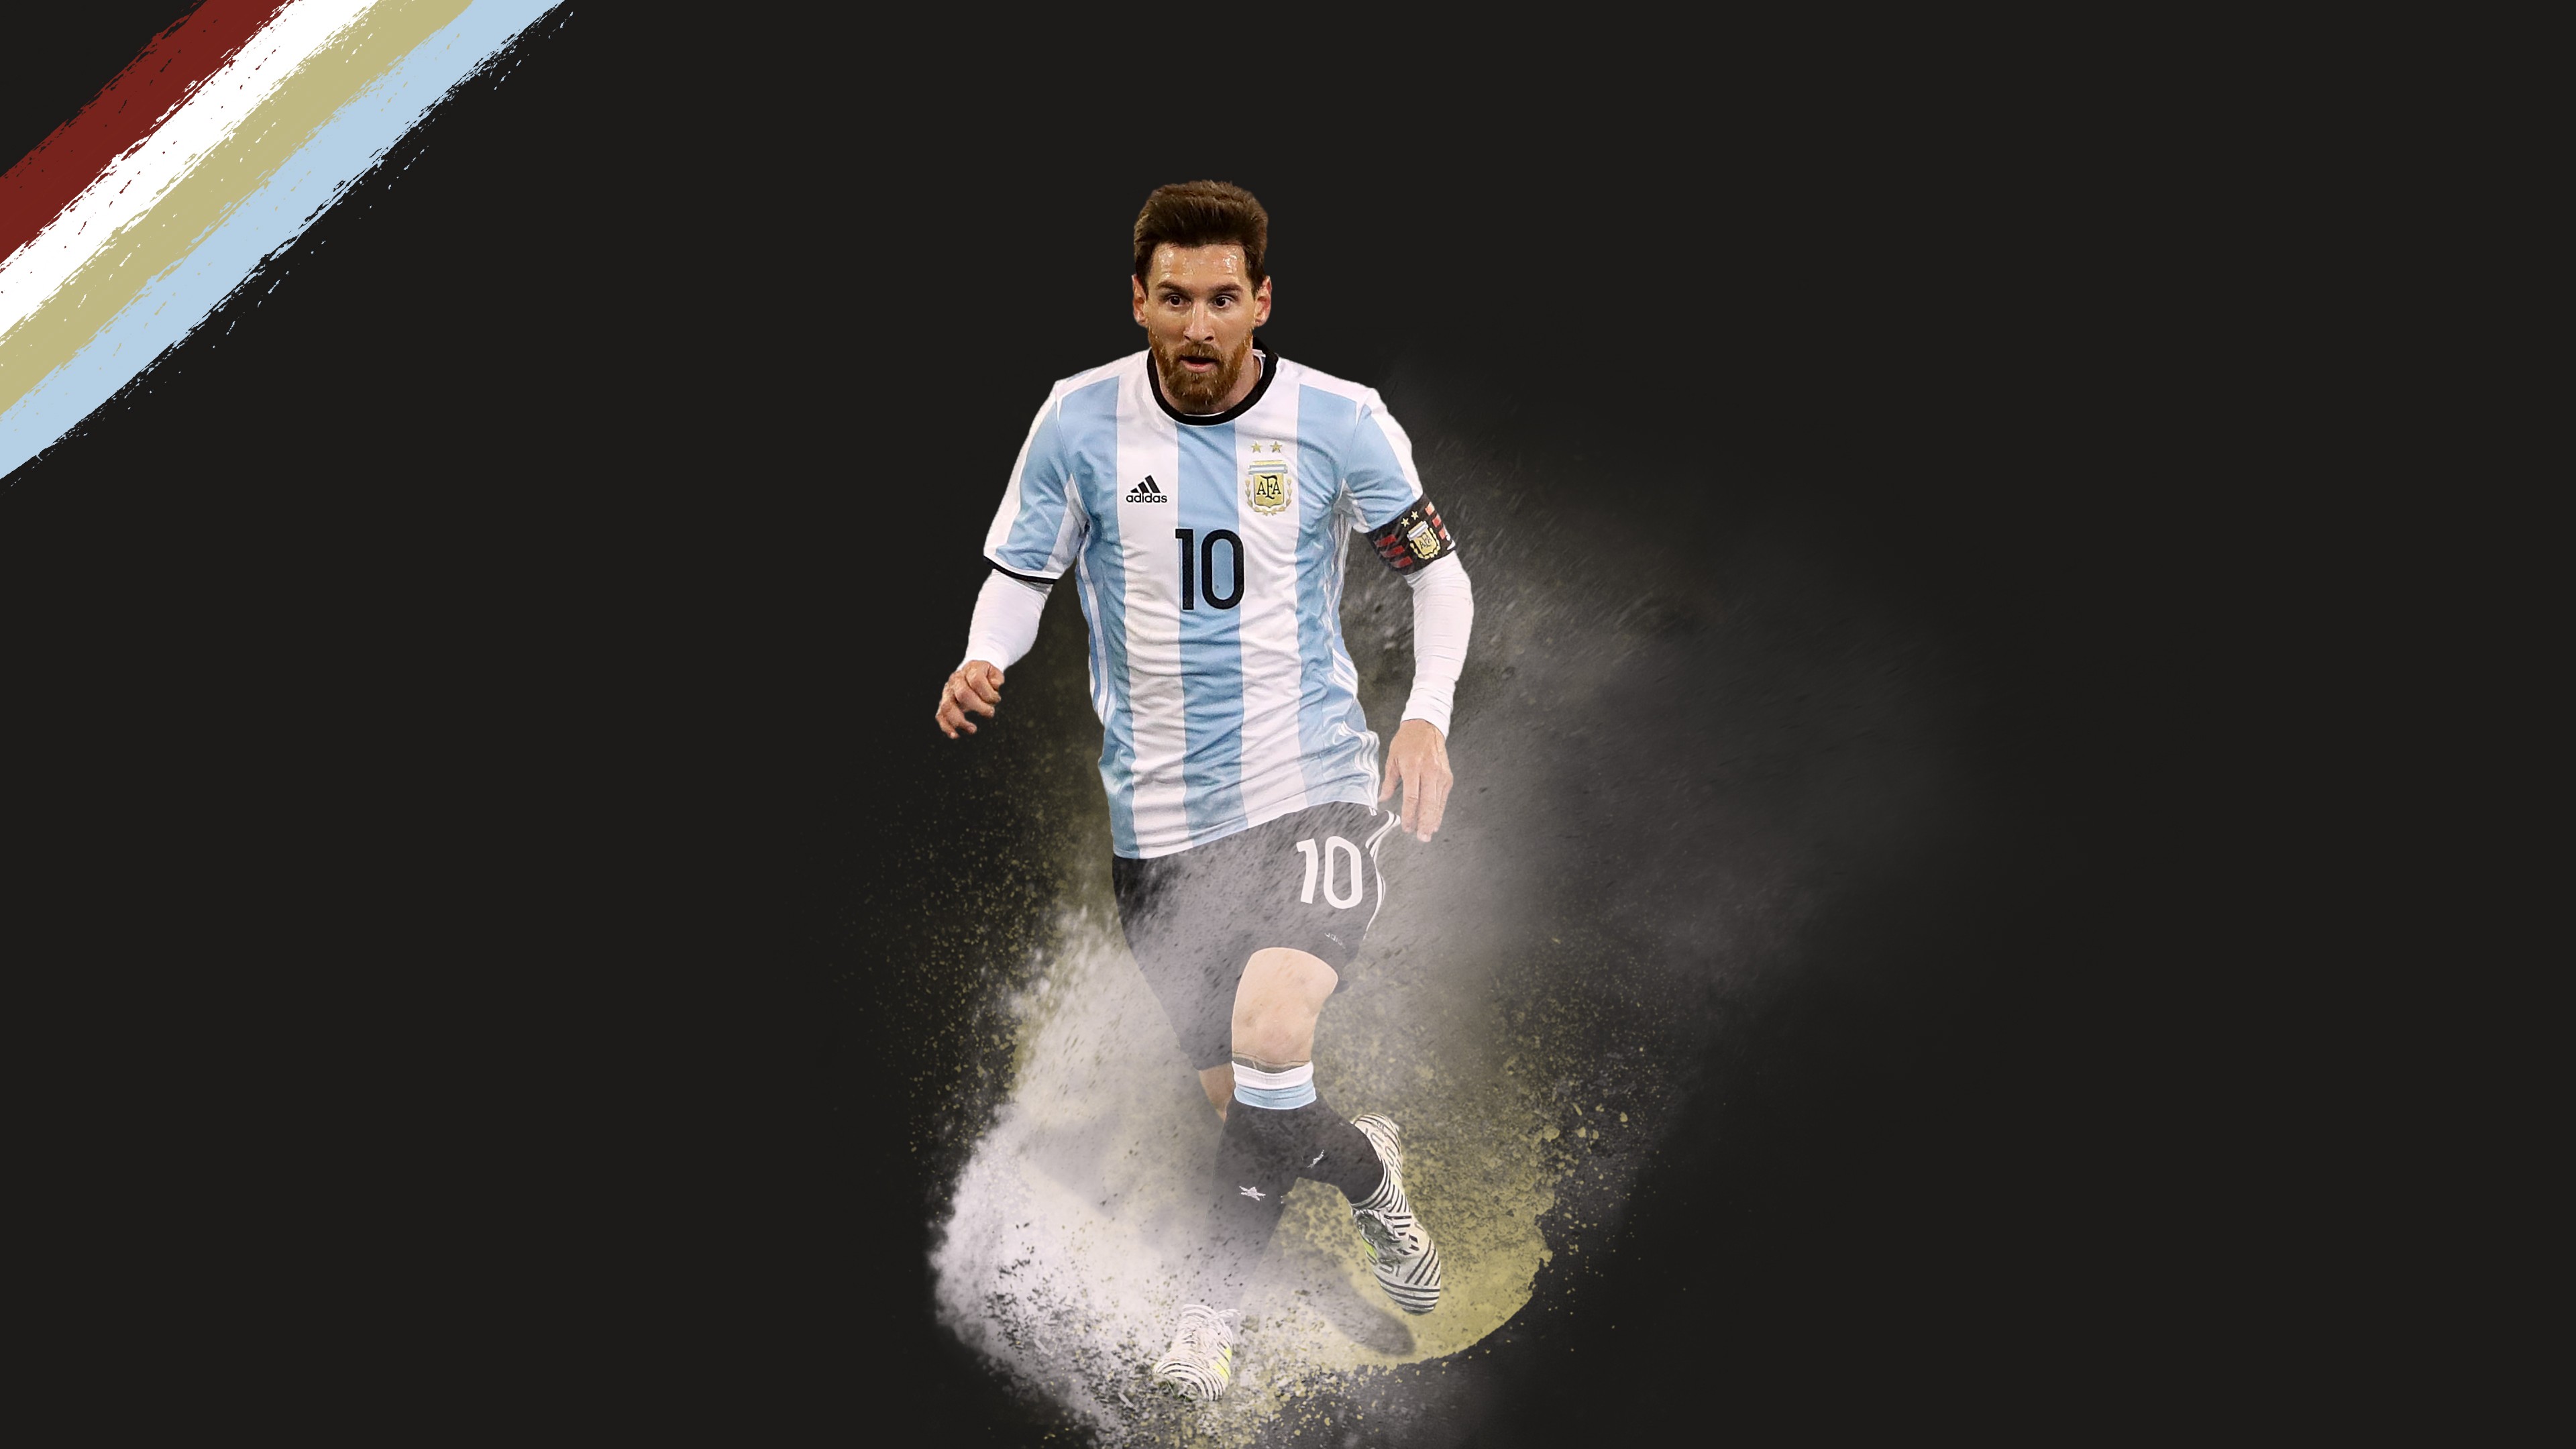 Lionel Messi Footballer Wallpapers